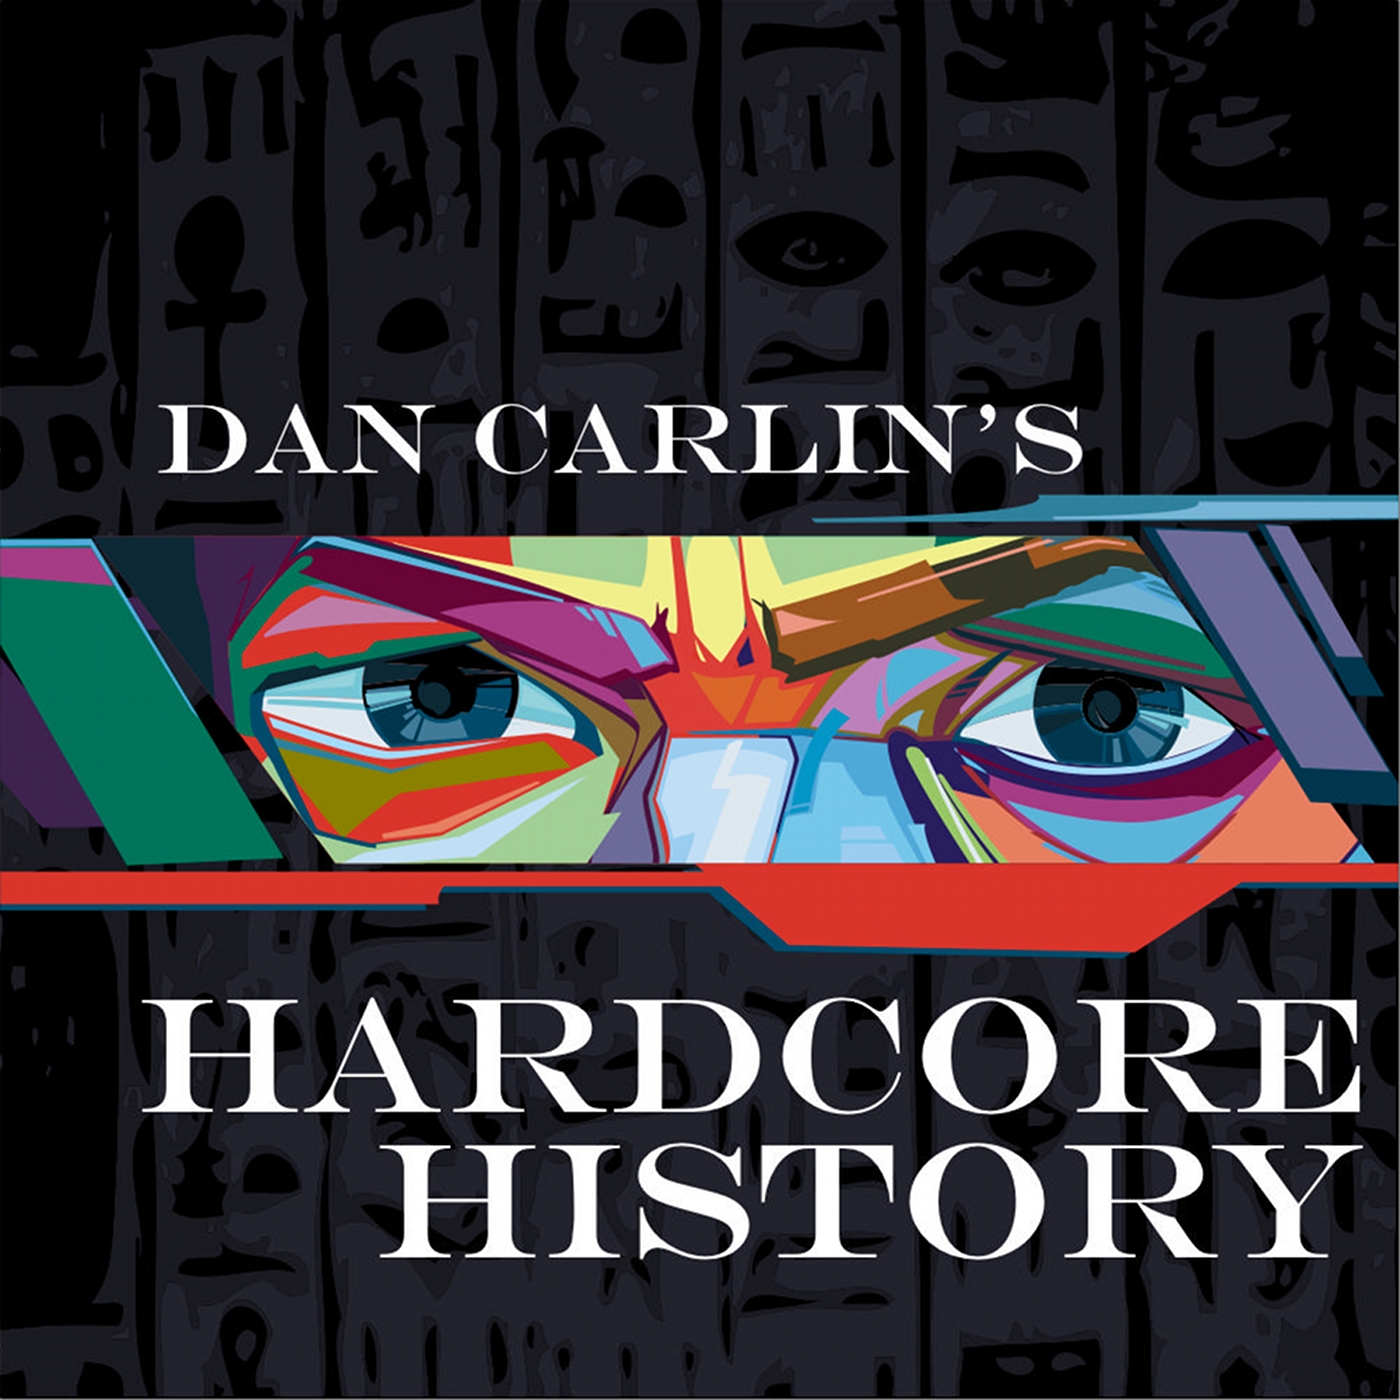 Dan Carlin's Hardcore History by Dan Carlin